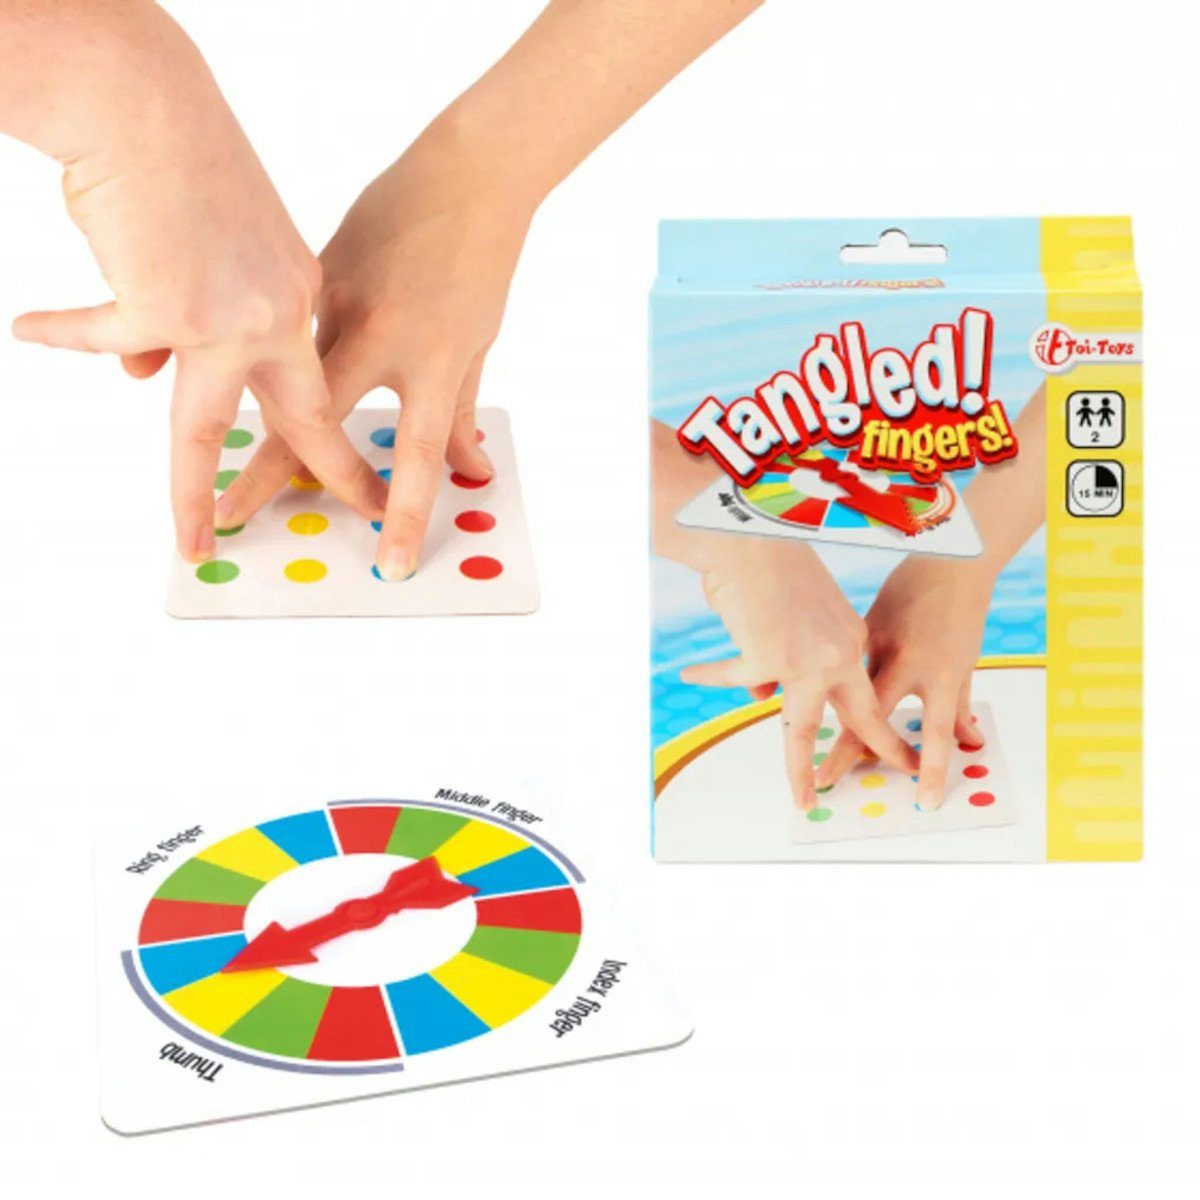 Tangled Toi-Toys Fingers!, Finger Spiel, Partyspiel verschlungene